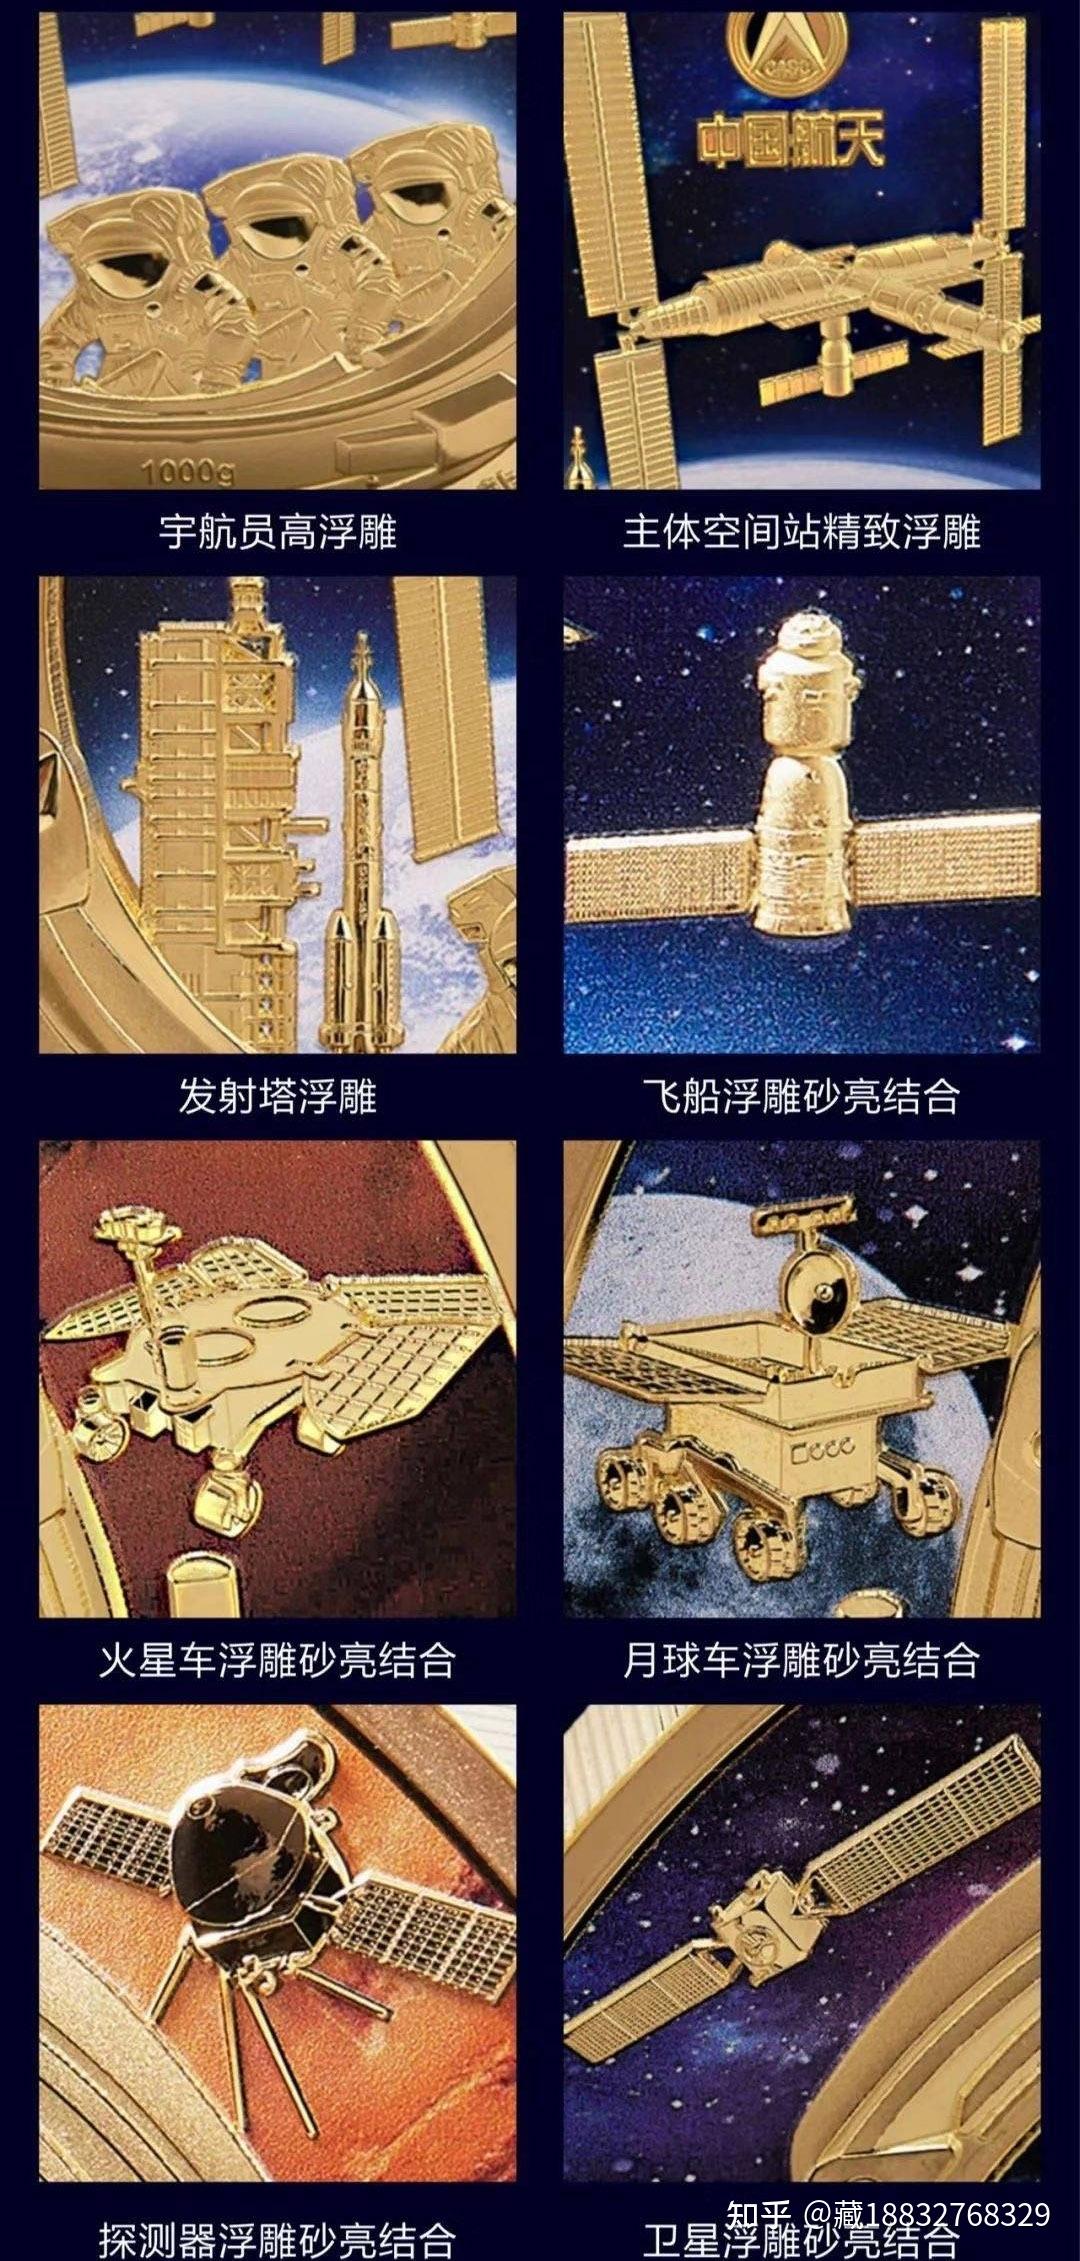 中国航天65周年纪念章大全套纪念币套装会销礼品可一件代发-阿里巴巴